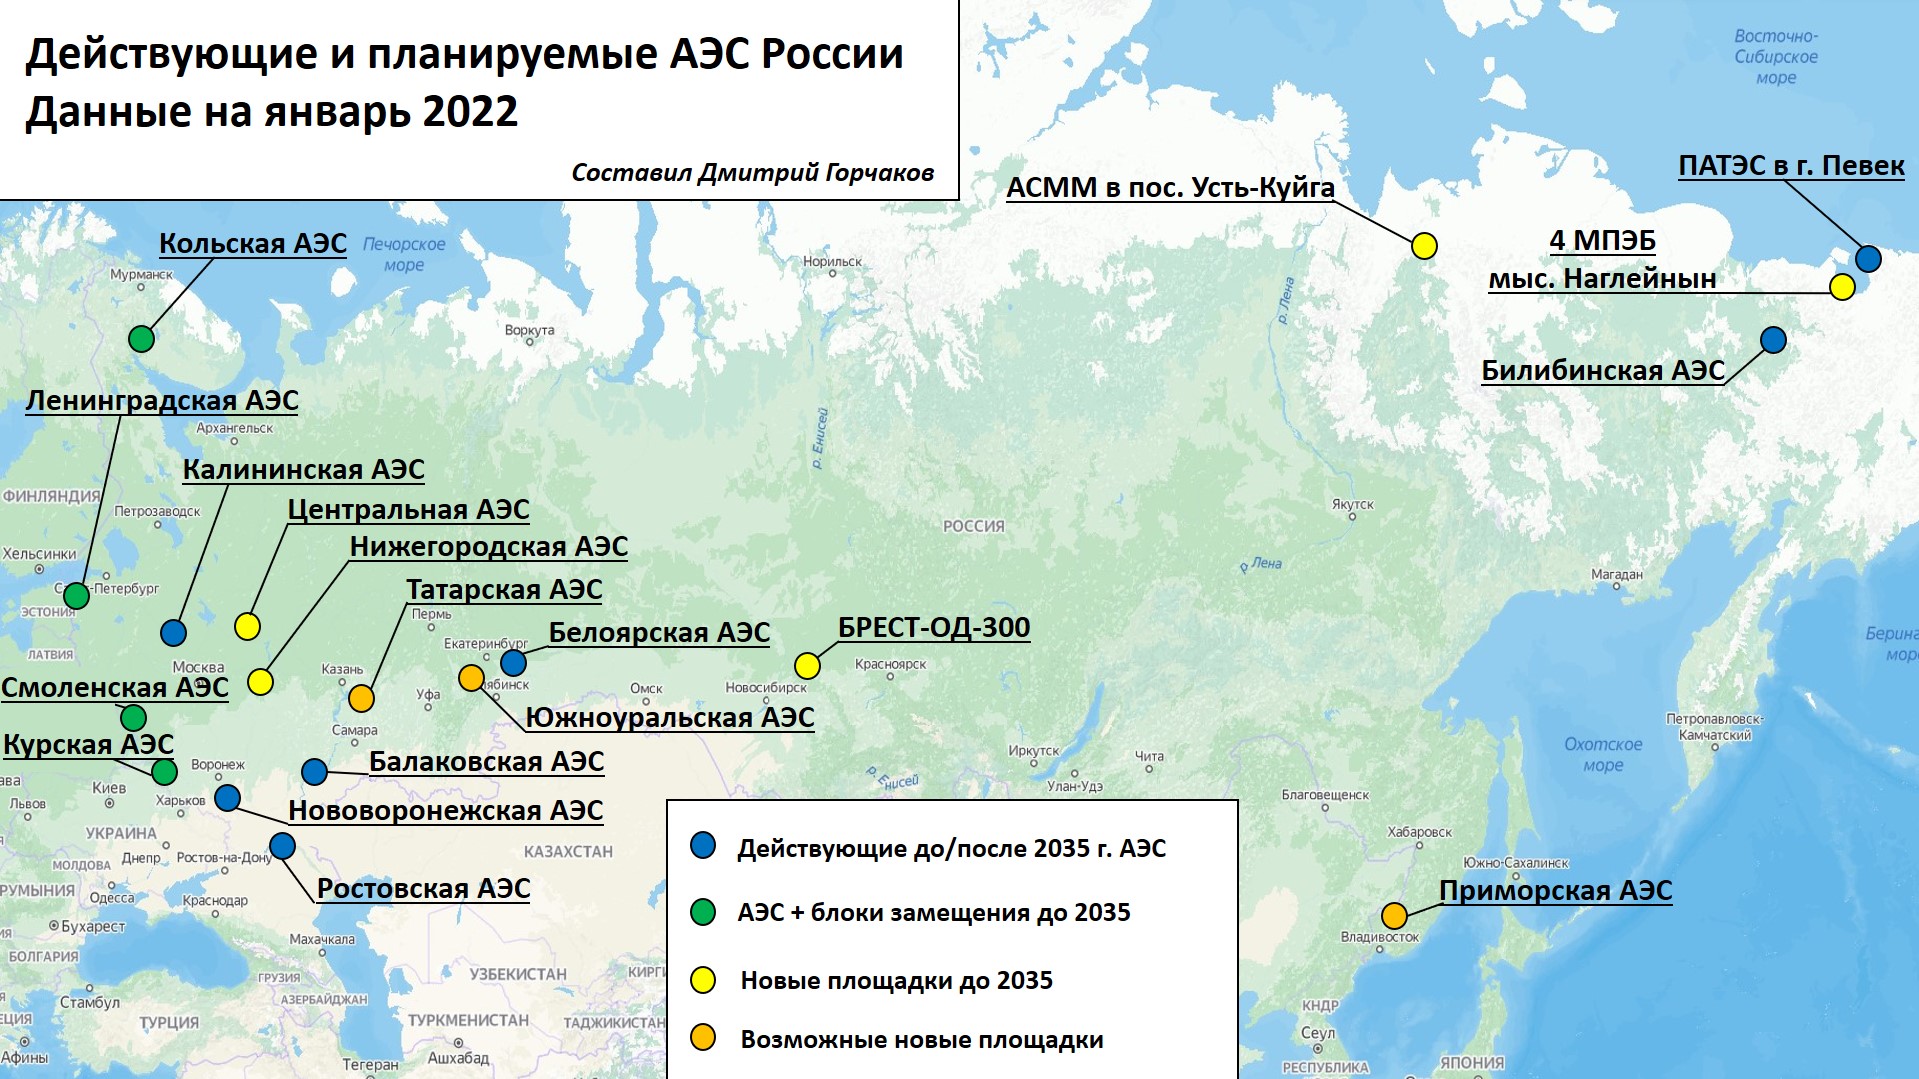 Карта действующих/планируемых и возможных АЭС России. Инфографика Дмитрия Горчакова